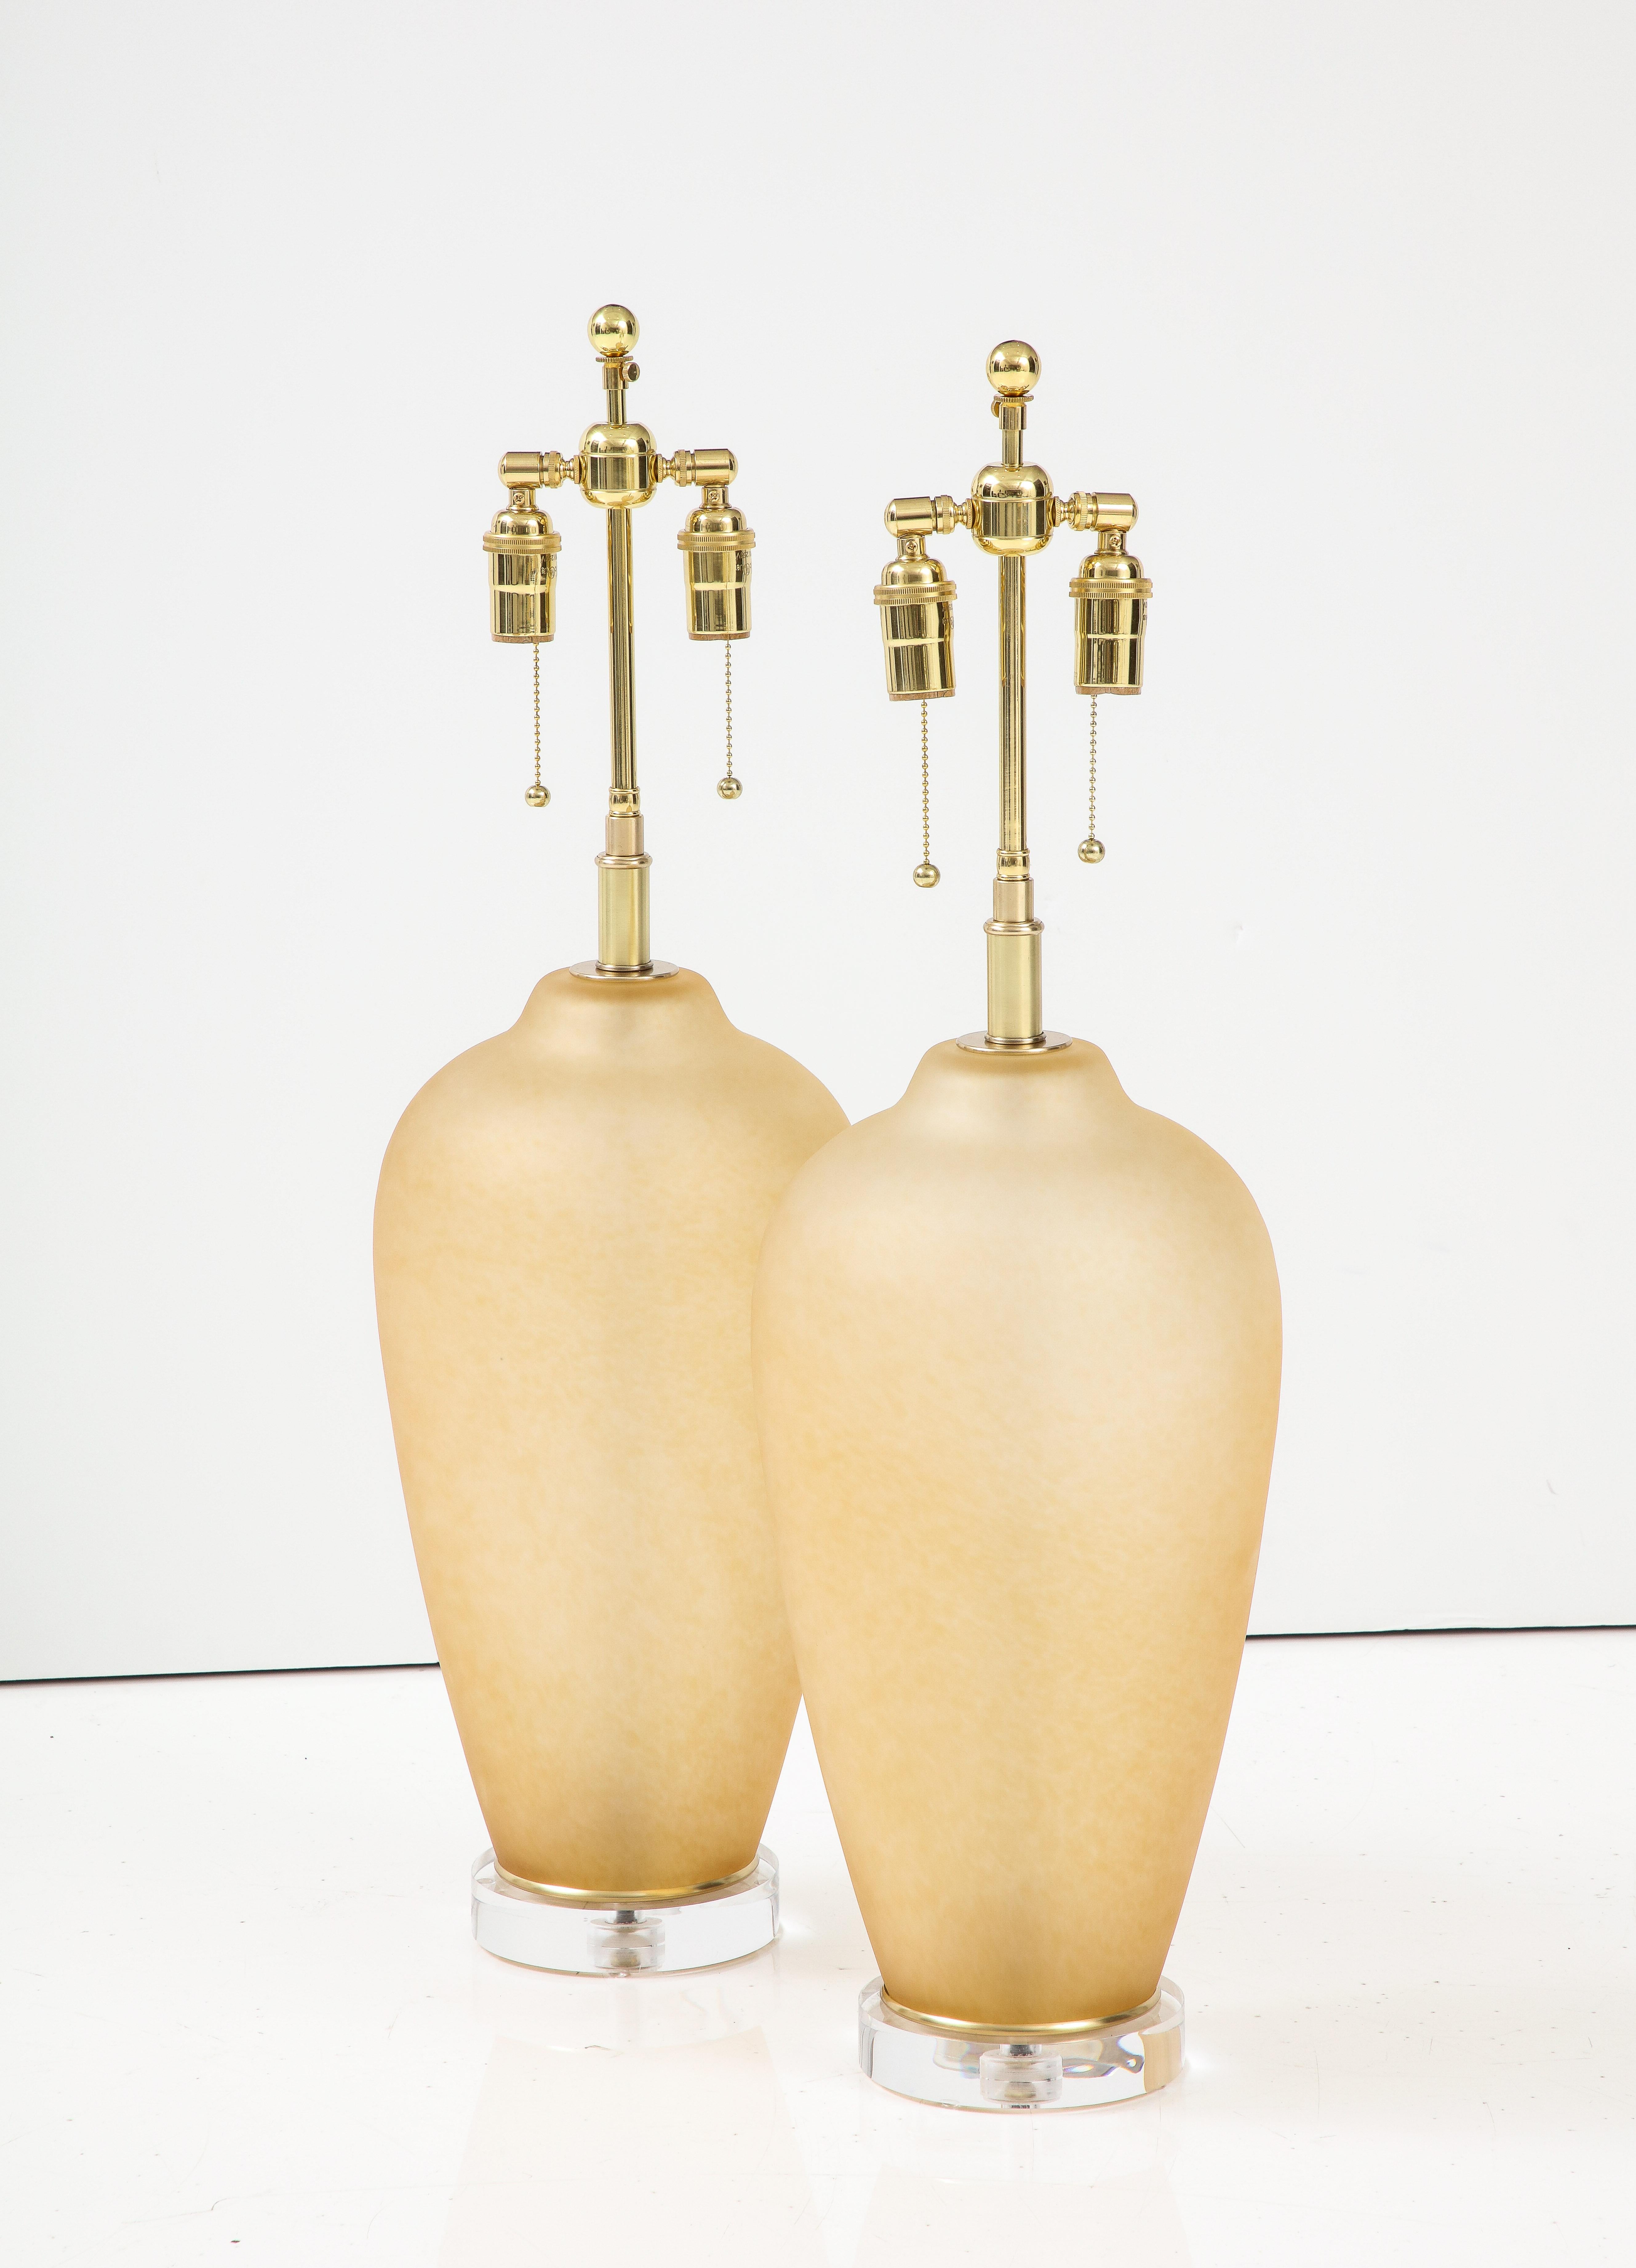 Paire de grandes lampes en verre de Murano, de couleur ambrée, montées sur des supports en verre. 
bases épaisses en lucite.
Les lampes ont été nouvellement recâblées avec des faisceaux doubles réglables en laiton poli qui acceptent des ampoules de